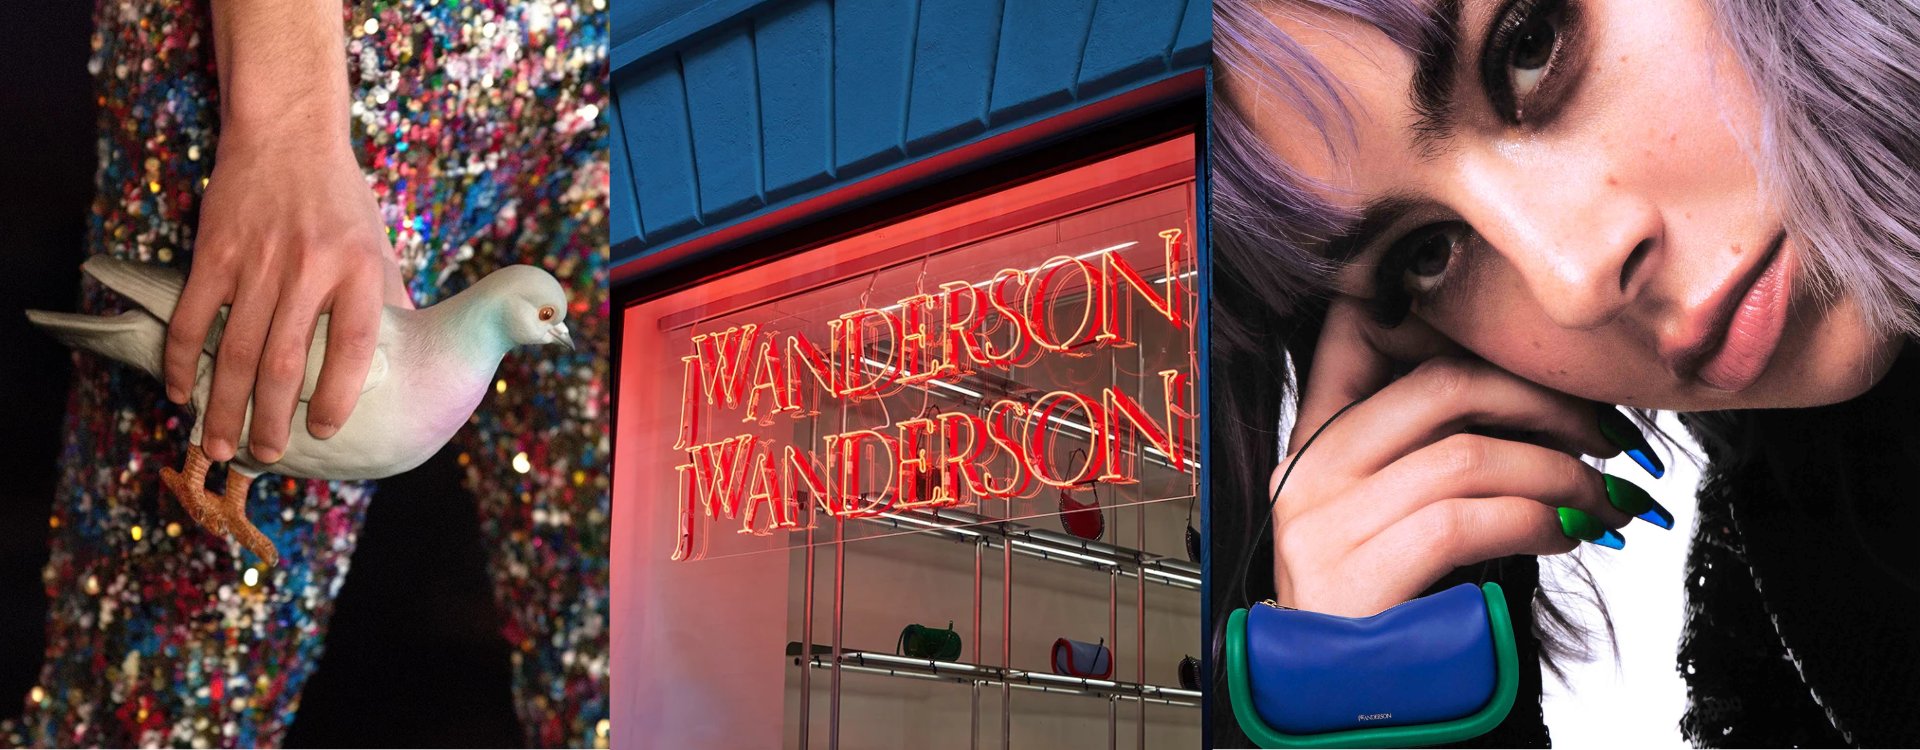 Ein Model in einer glitzernden Hose trägt eine Taubenförmige Tasche. Ein Schaufenster ist mit dem Markenlogo JW Anderson beleuchtet. Eine Frau mit lila Haaren trägt eine sehr kleine Tasche. 